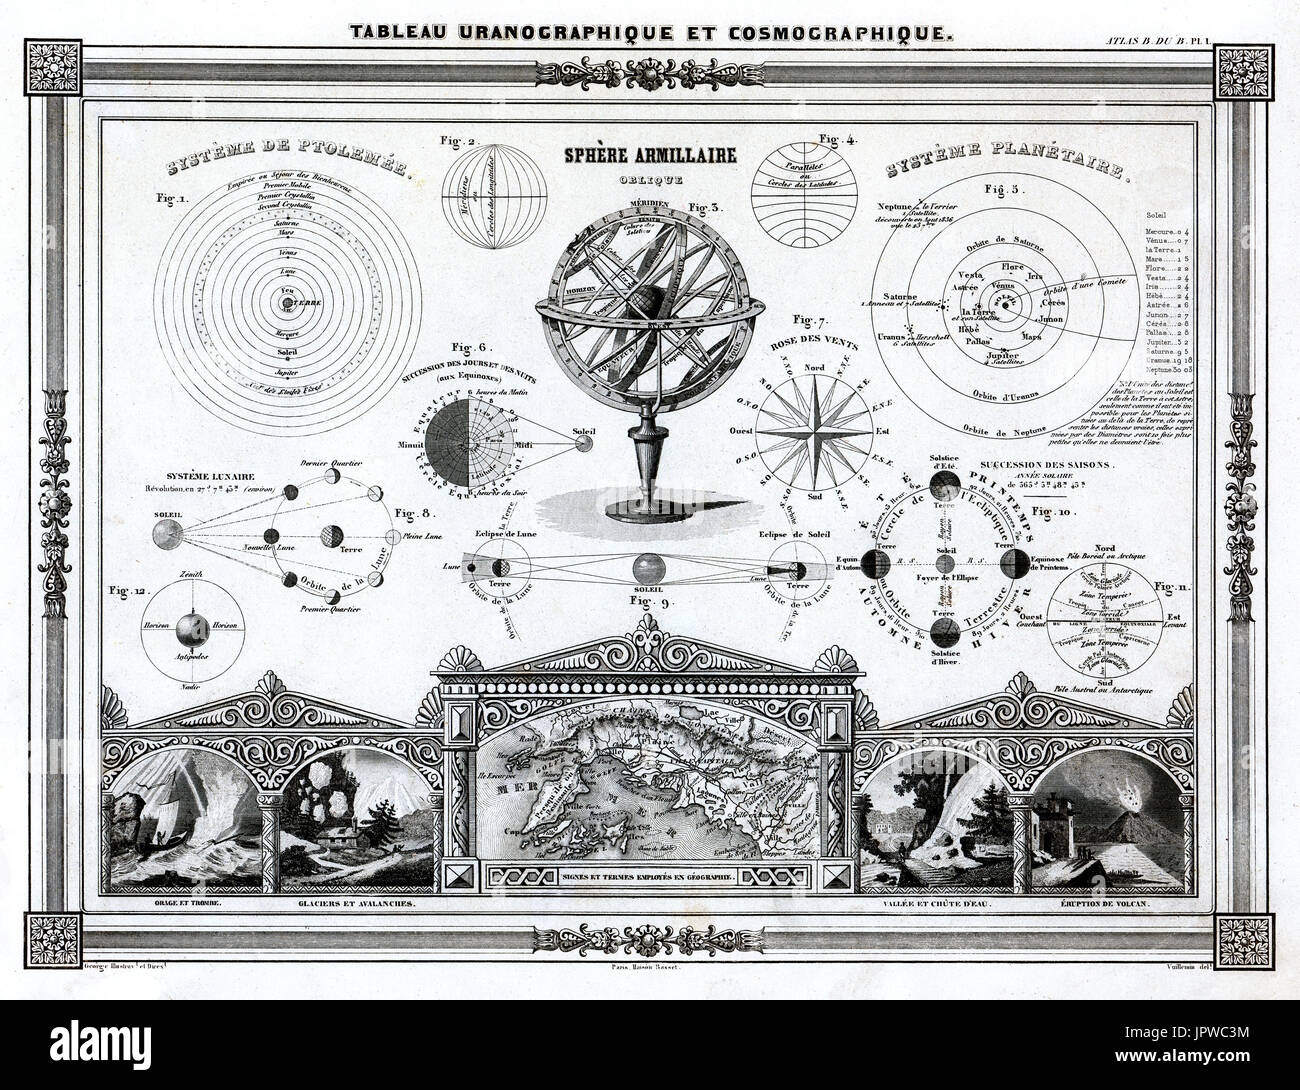 1846 Bocage Mapa antiguo con una serie de diagramas en el Eclipse Solar y Lunar, el sistema solar, las órbitas planetarias y ciencias de la tierra. Foto de stock